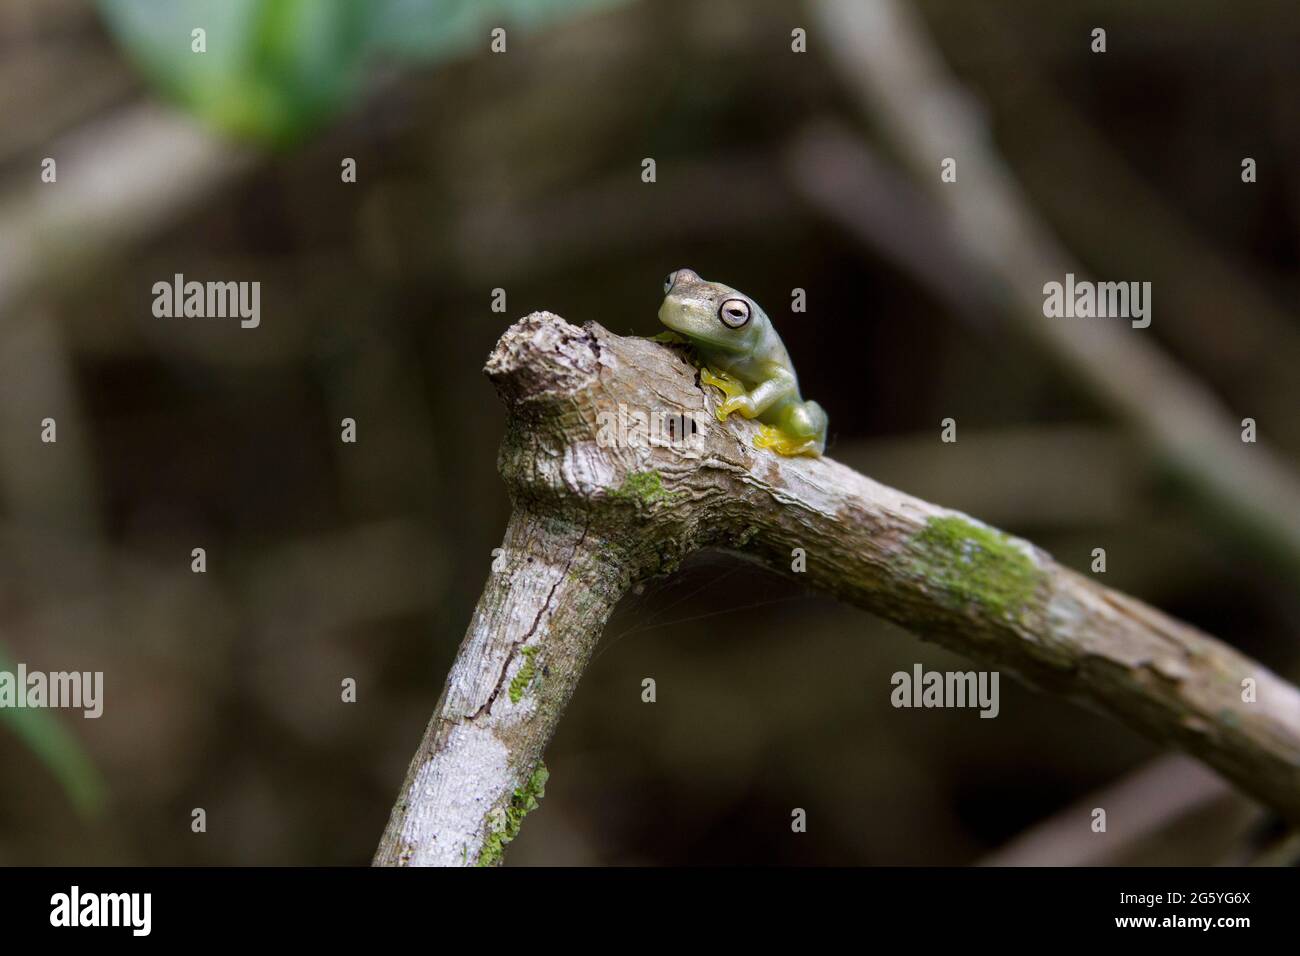 Une grenouille en verre se trouve sur une branche. Banque D'Images